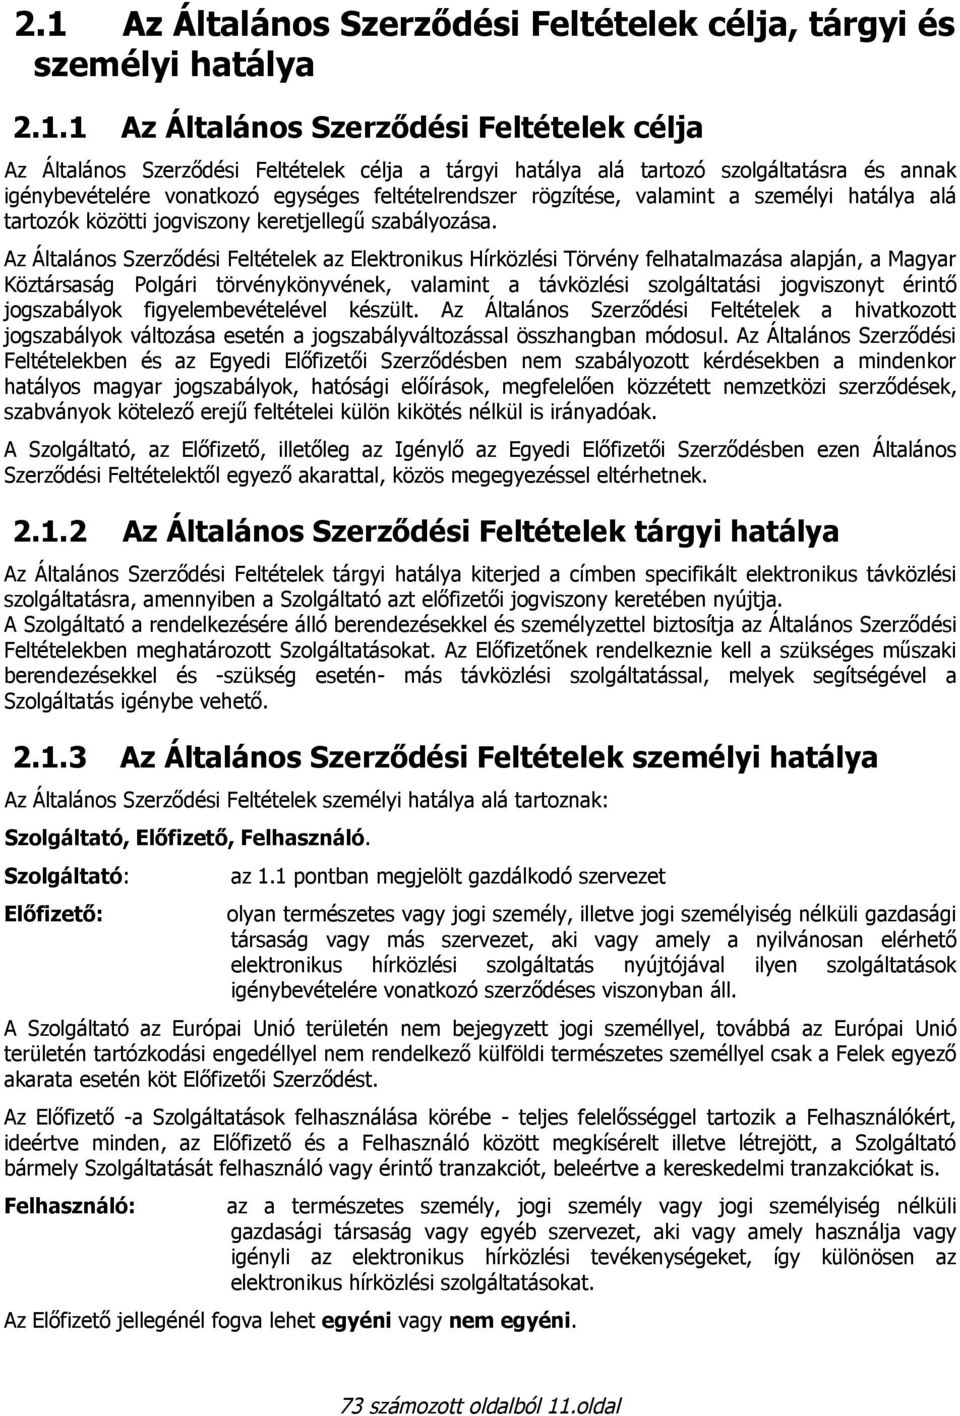 Az Általános Szerződési Feltételek az Elektronikus Hírközlési Törvény felhatalmazása alapján, a Magyar Köztársaság Polgári törvénykönyvének, valamint a távközlési szolgáltatási jogviszonyt érintő